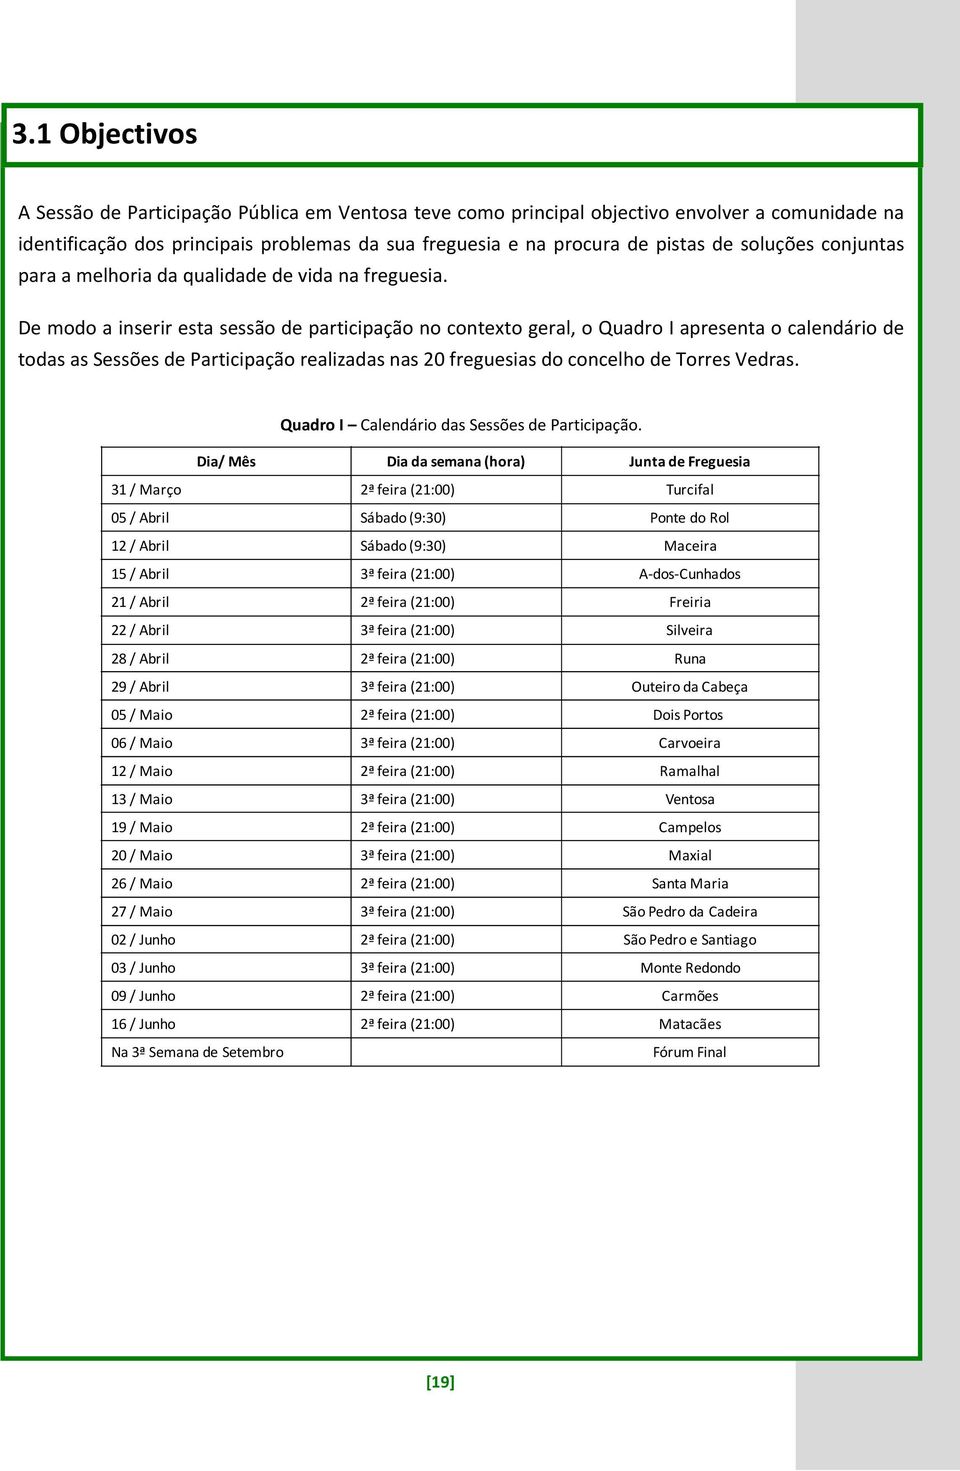 De modo a inserir esta sessão de participação no contexto geral, o Quadro I apresenta o calendário de todas as Sessões de Participação realizadas nas 20 freguesias do concelho de Torres Vedras.